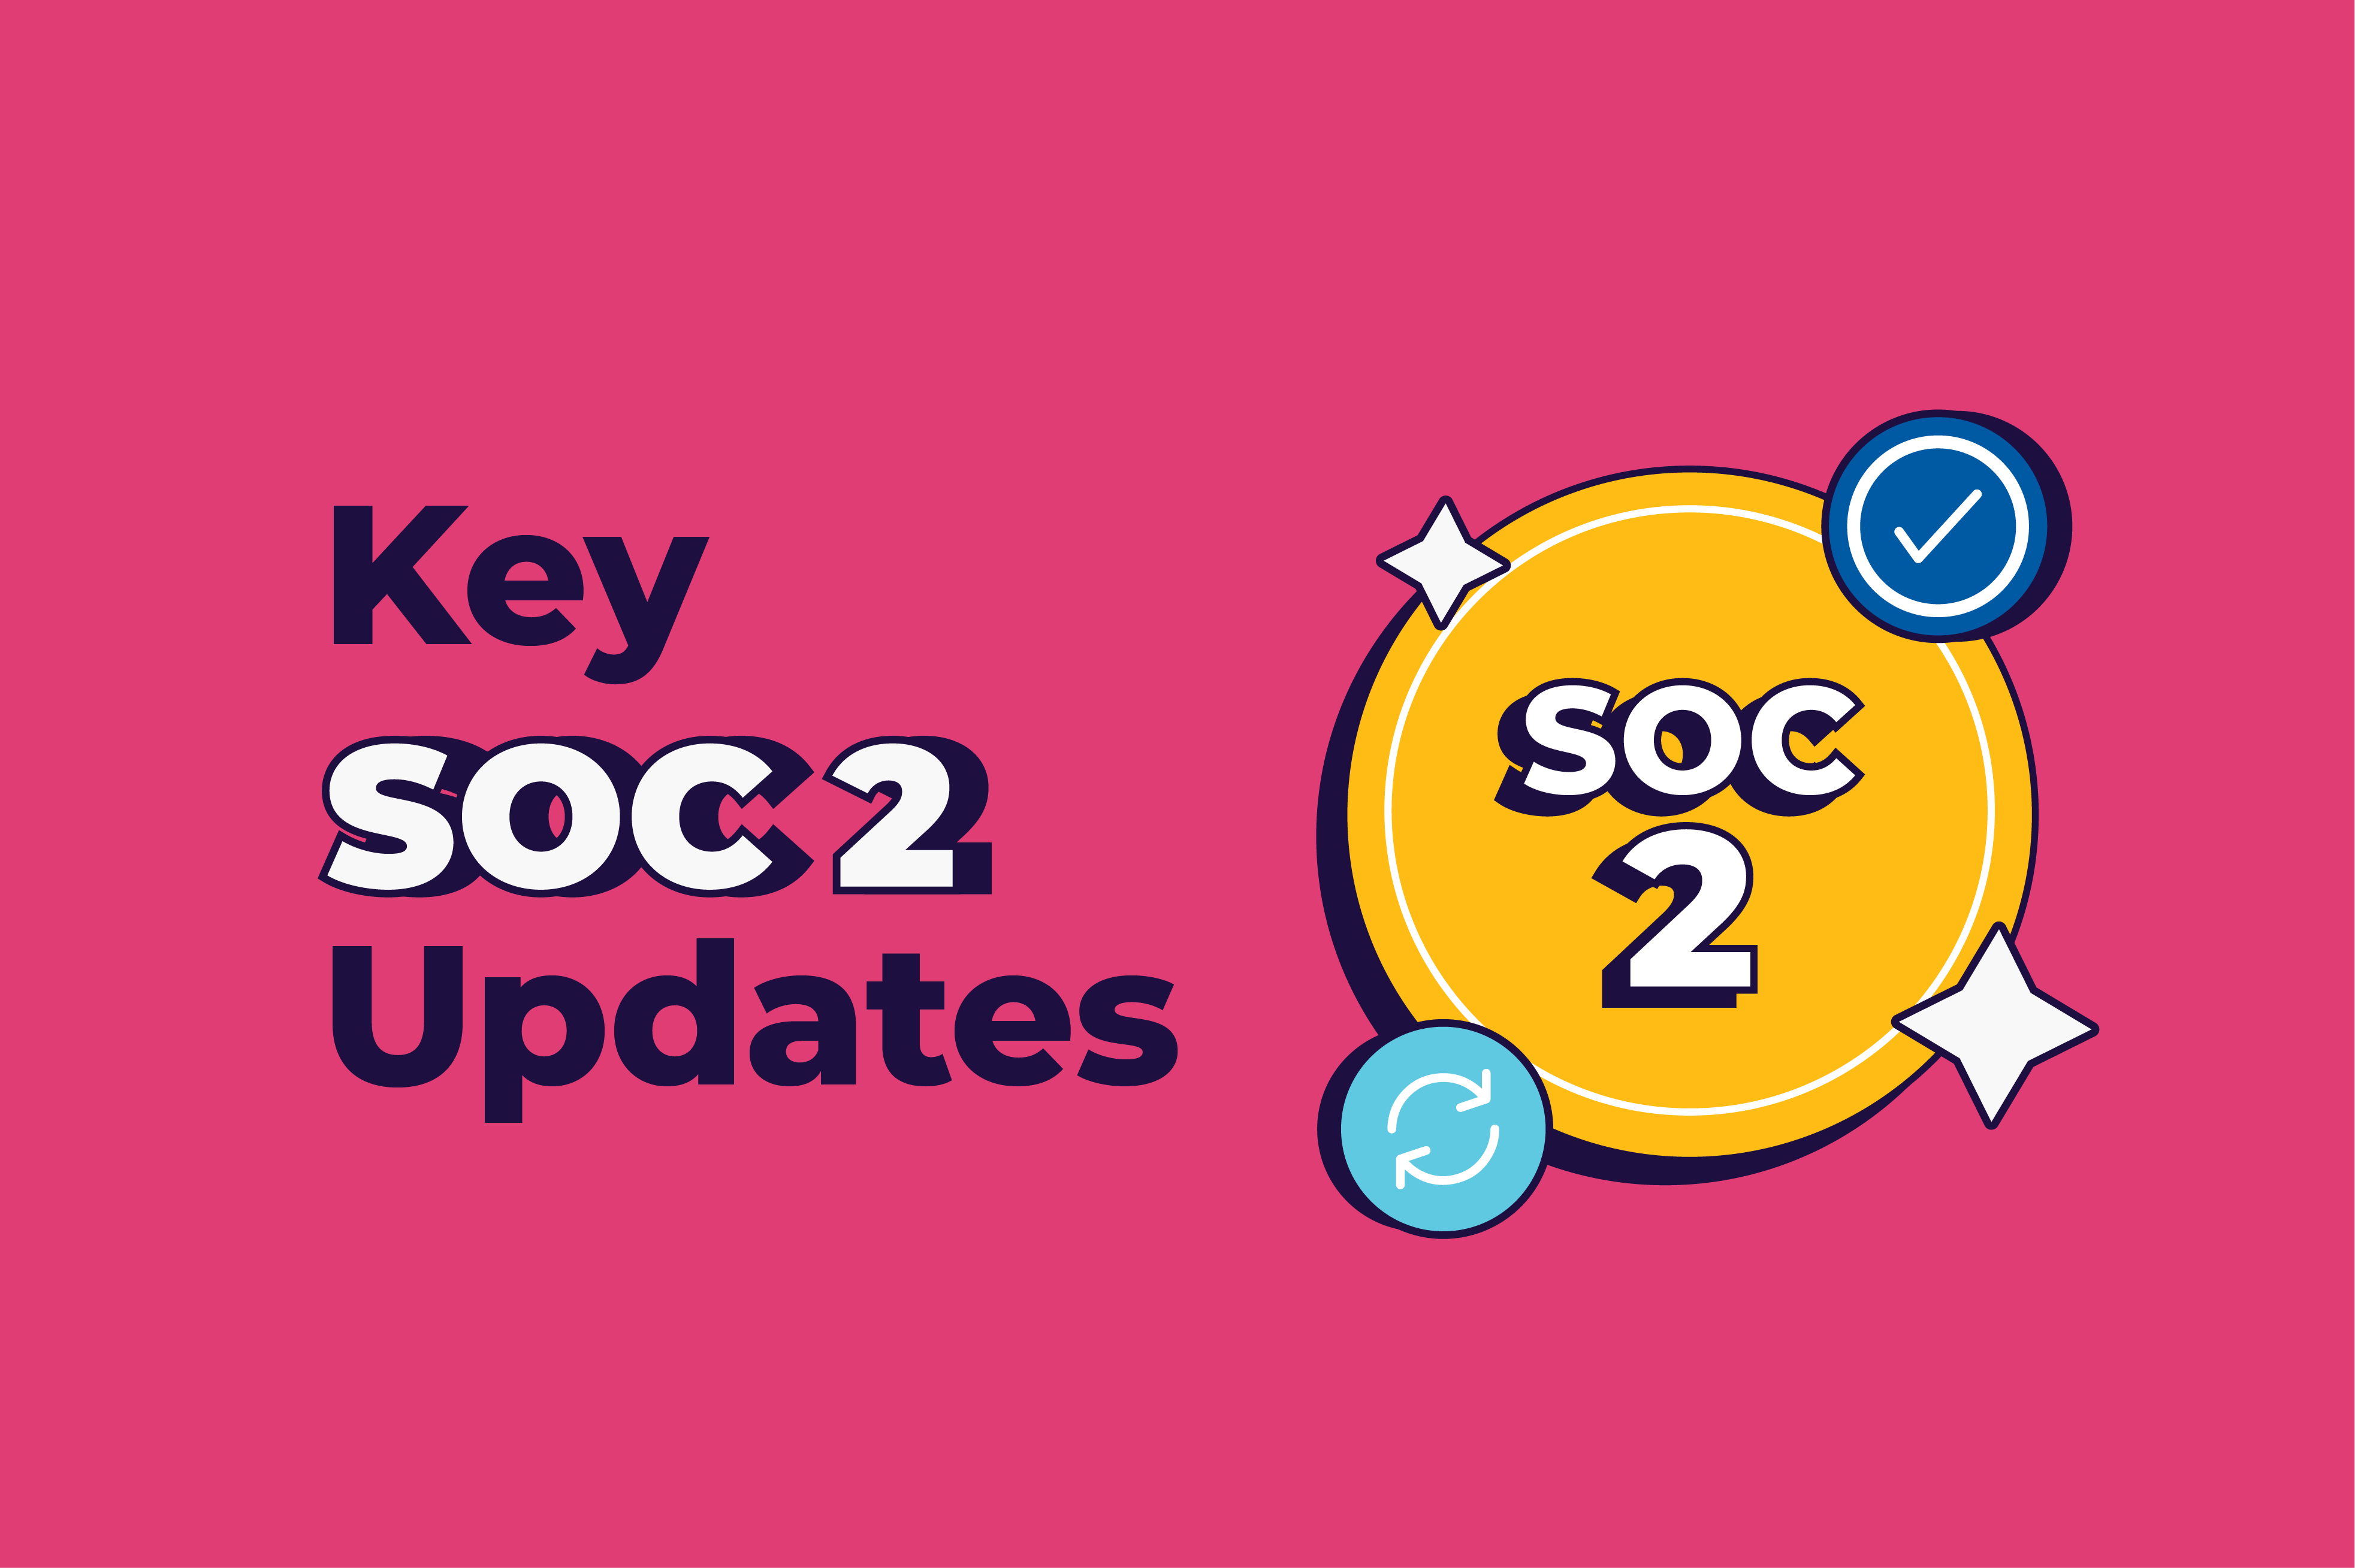 key soc 2 updates scytale